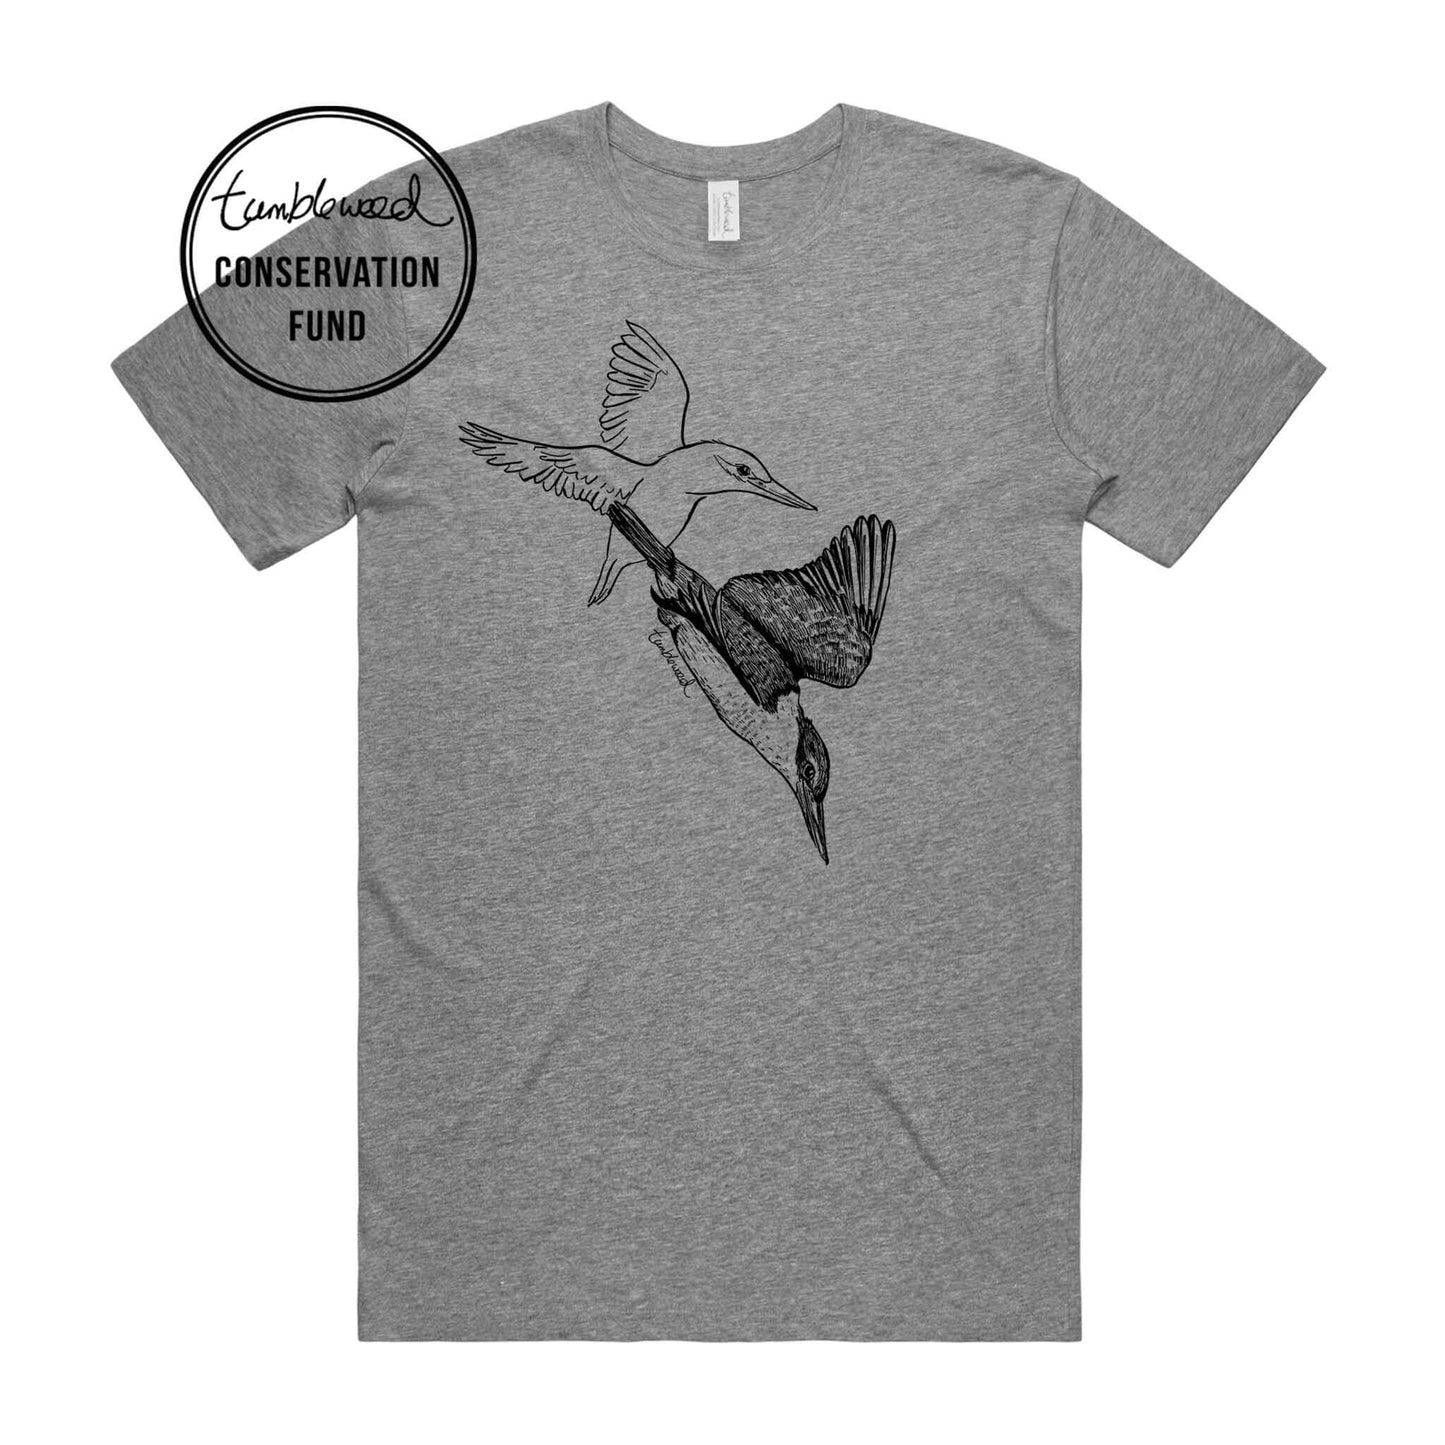 Kōtare/kingfisher T-shirt